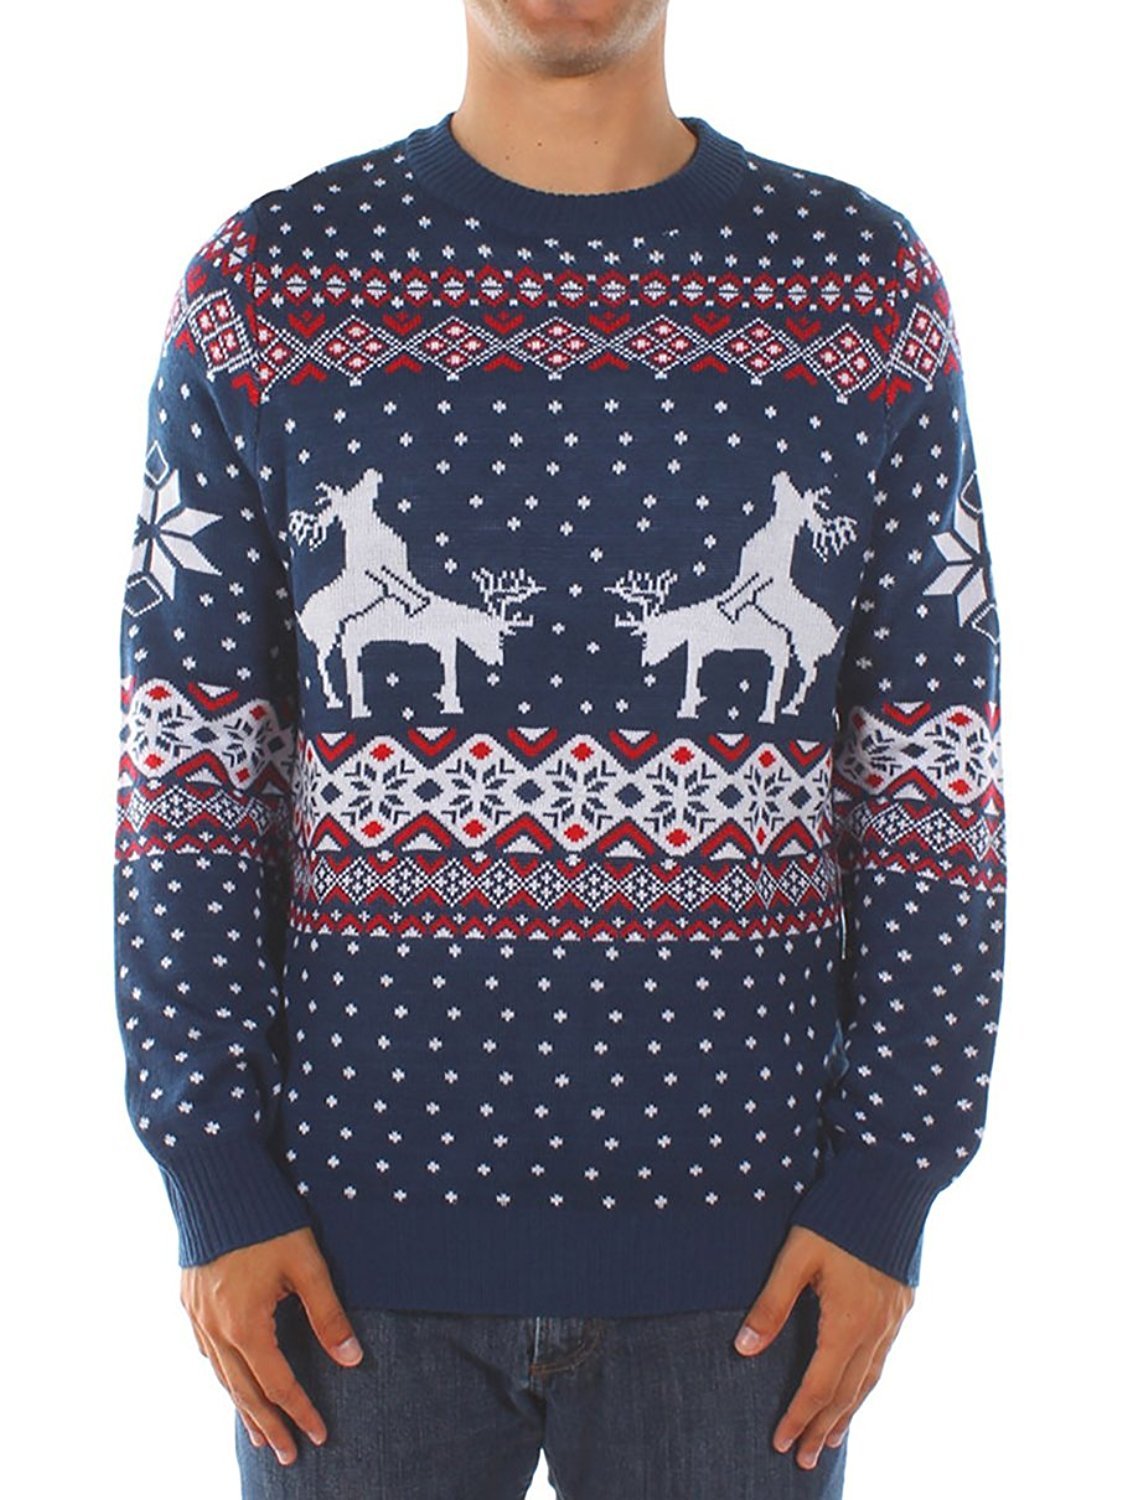 самые уродливые рождественские свитера уродливые новогодние свитера ugly christmas sweaters отвратительные мужики disgusting men